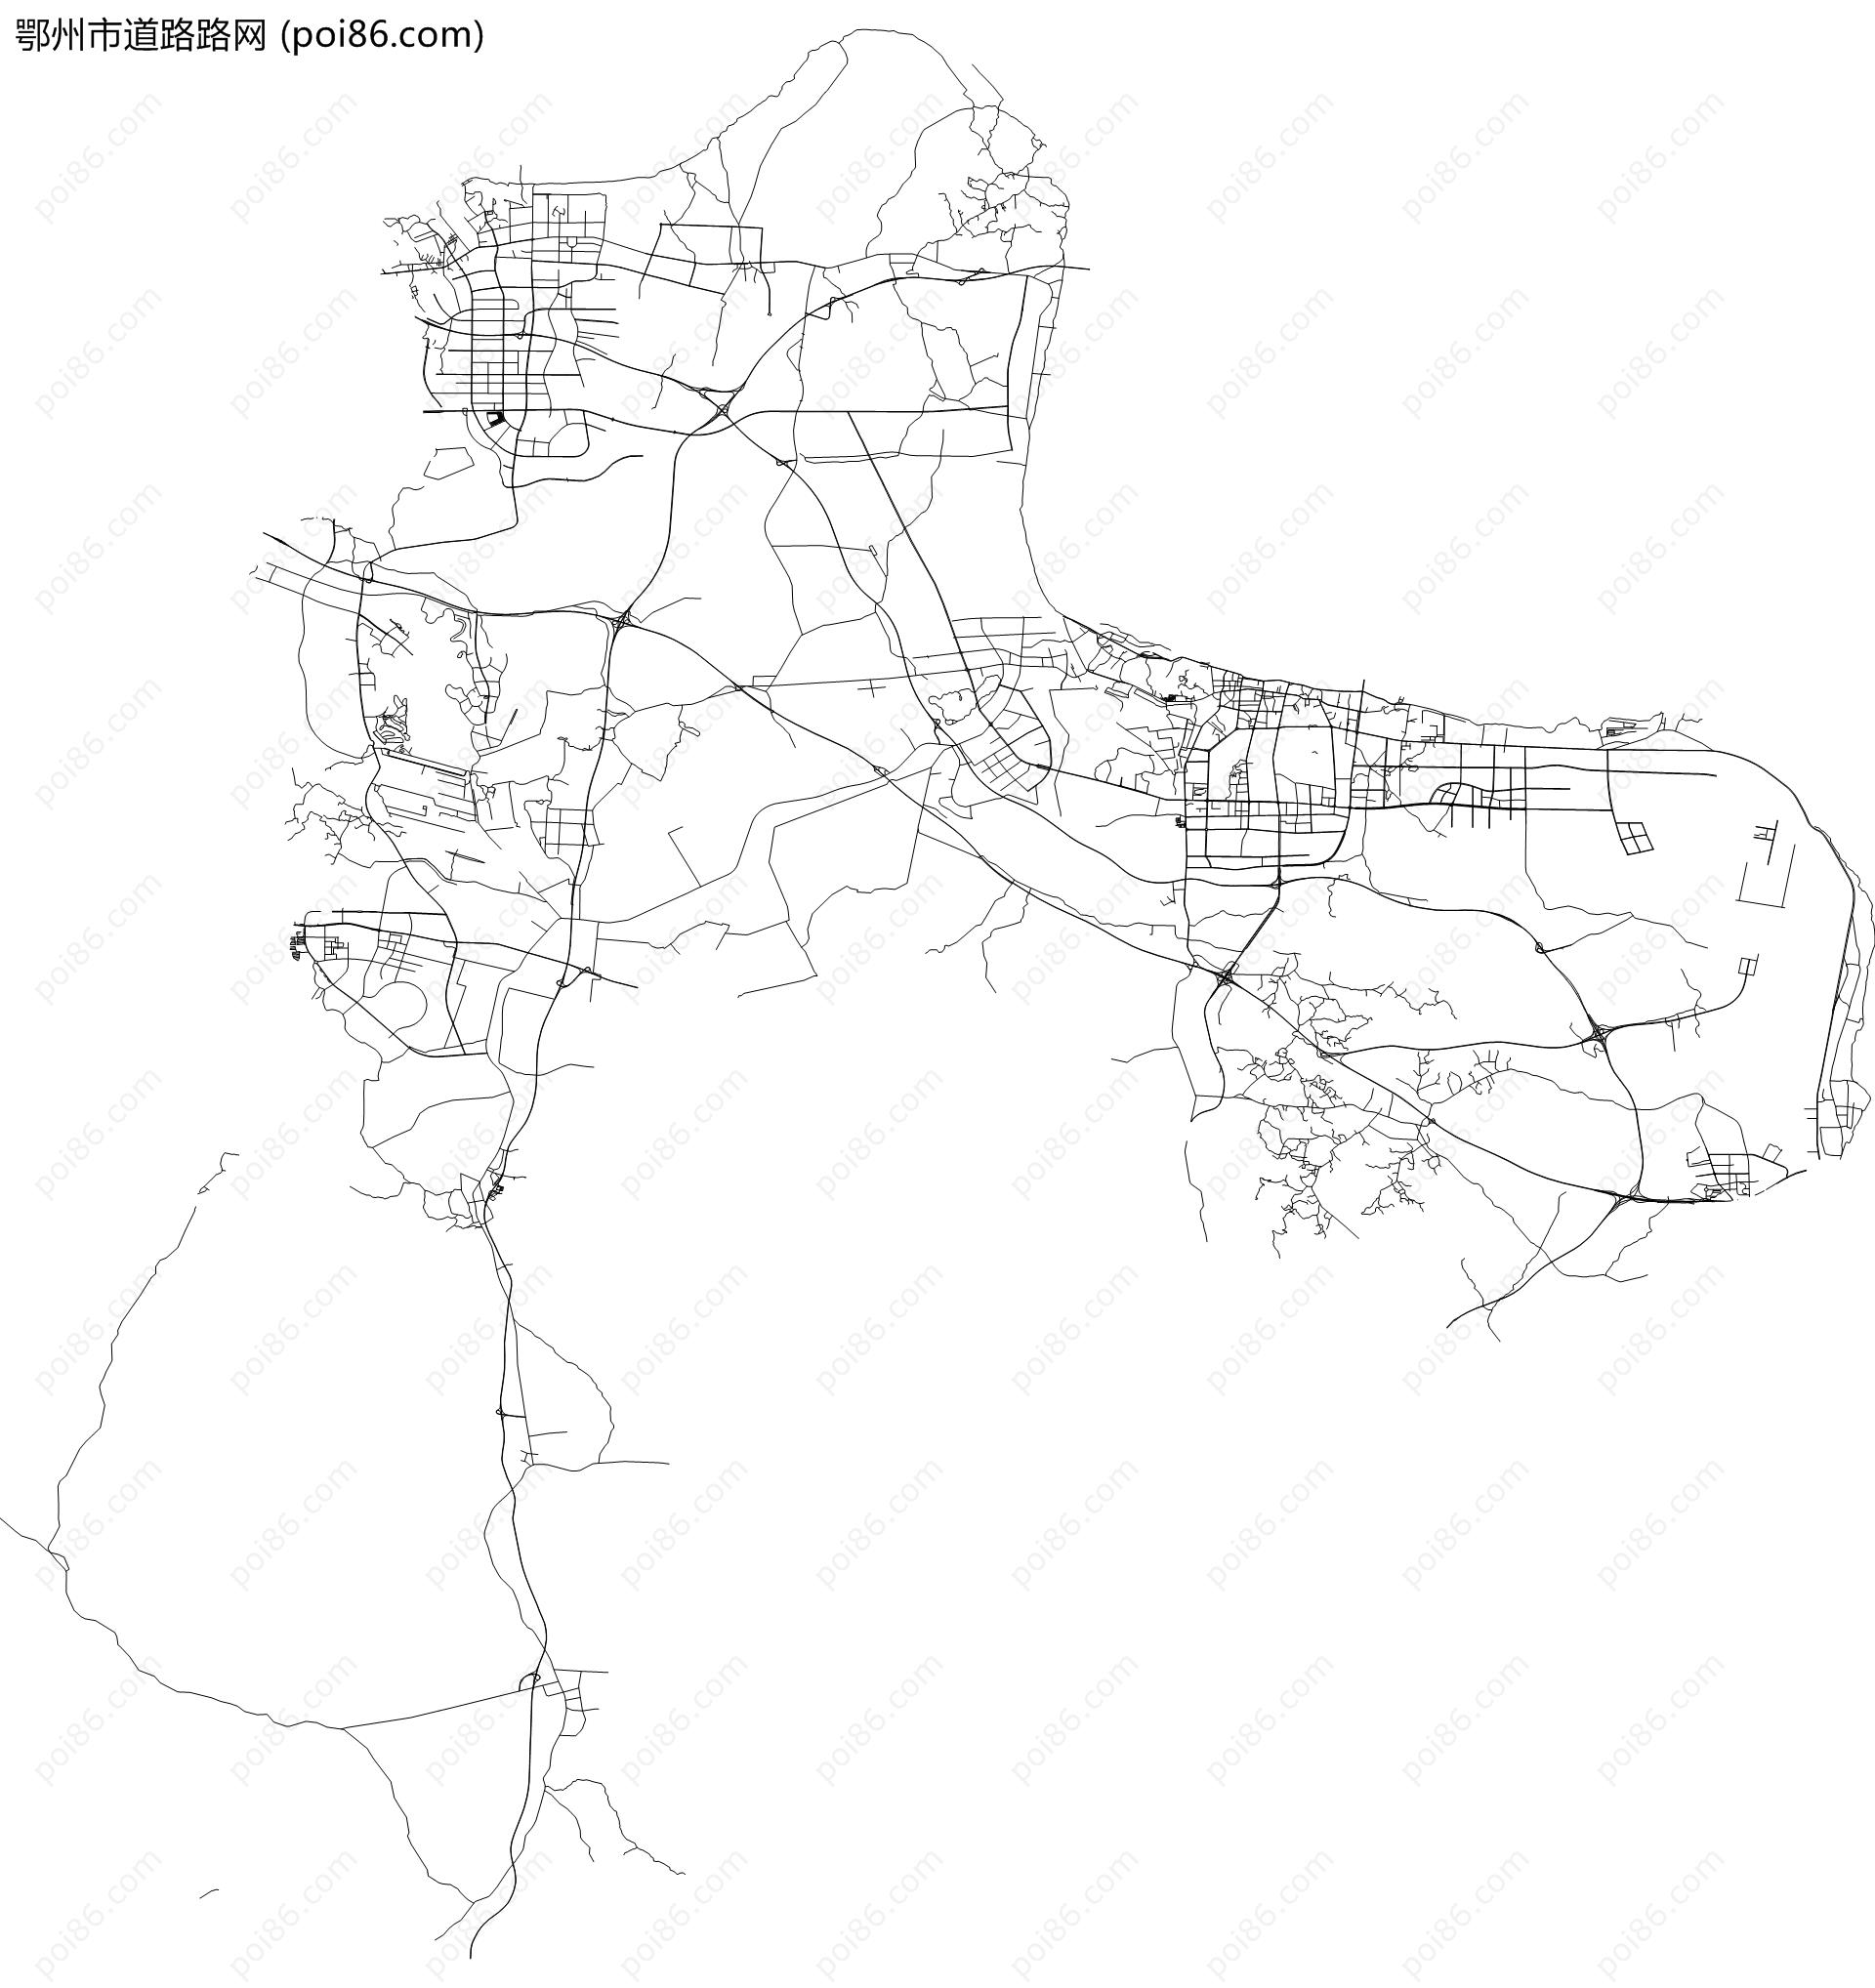 鄂州市道路路网地图